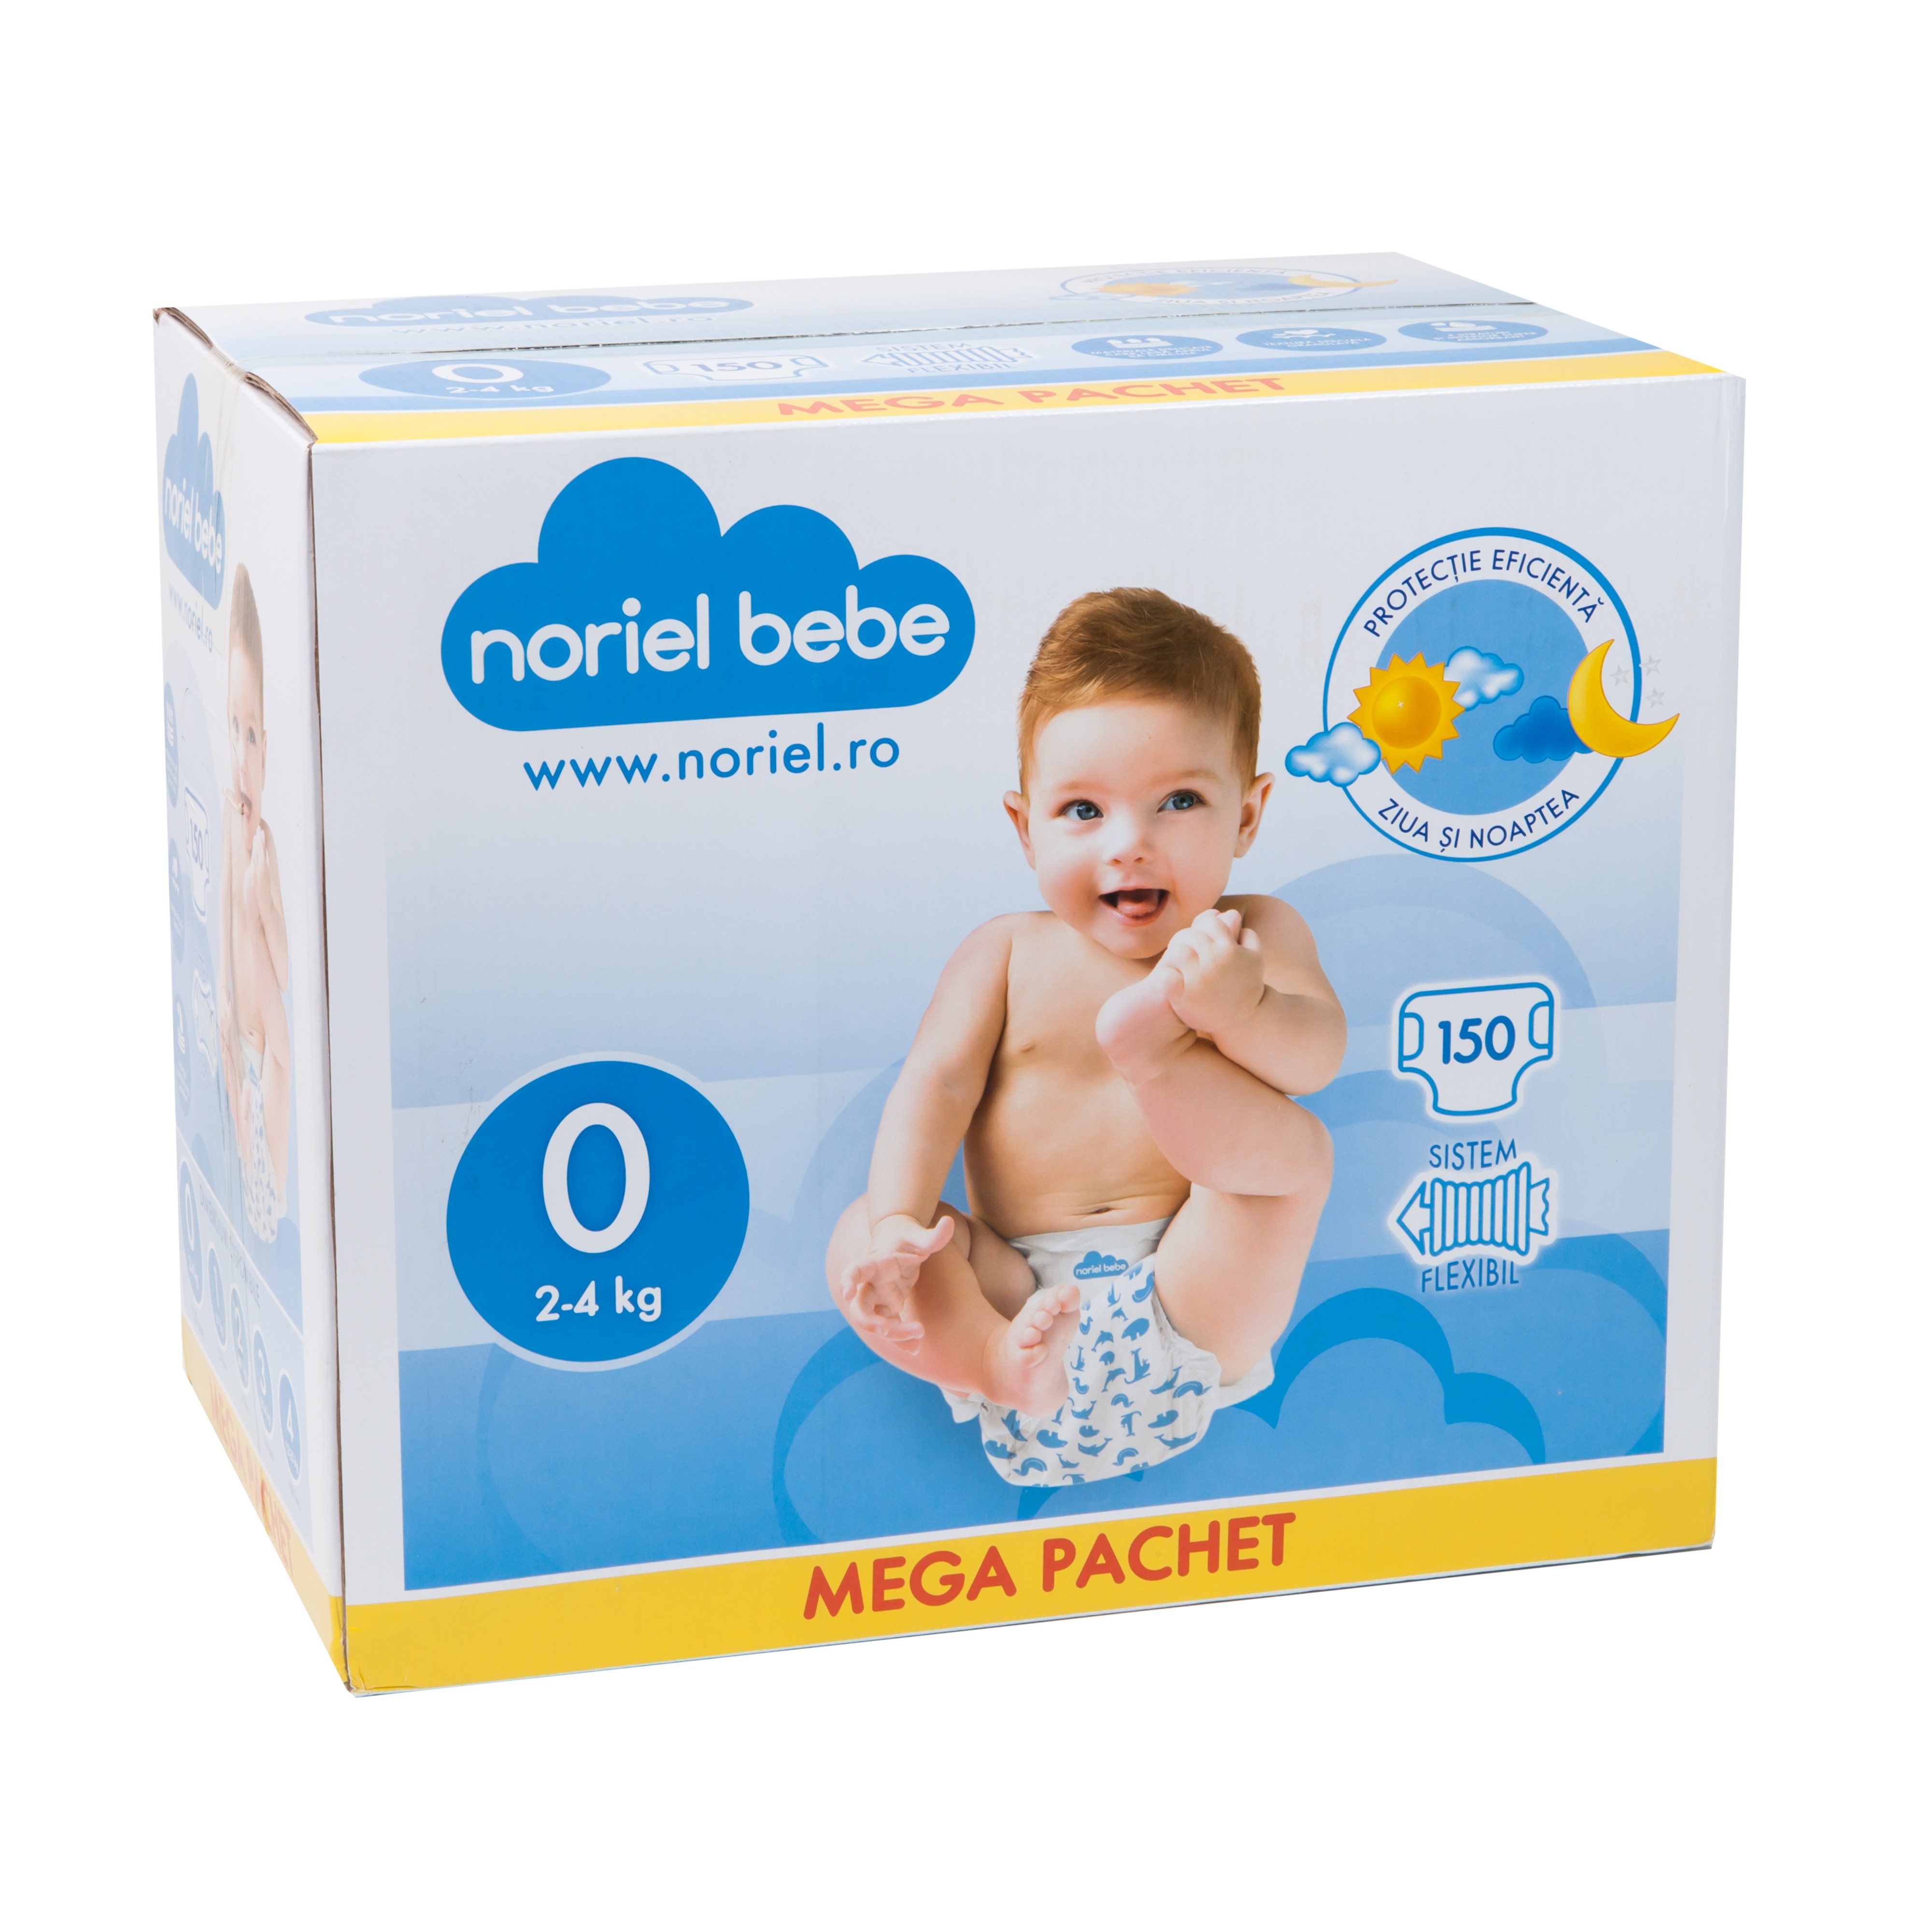 scutece-noriel-bebe-mega-pachet-marimea-0-150-buc-2-4-kg